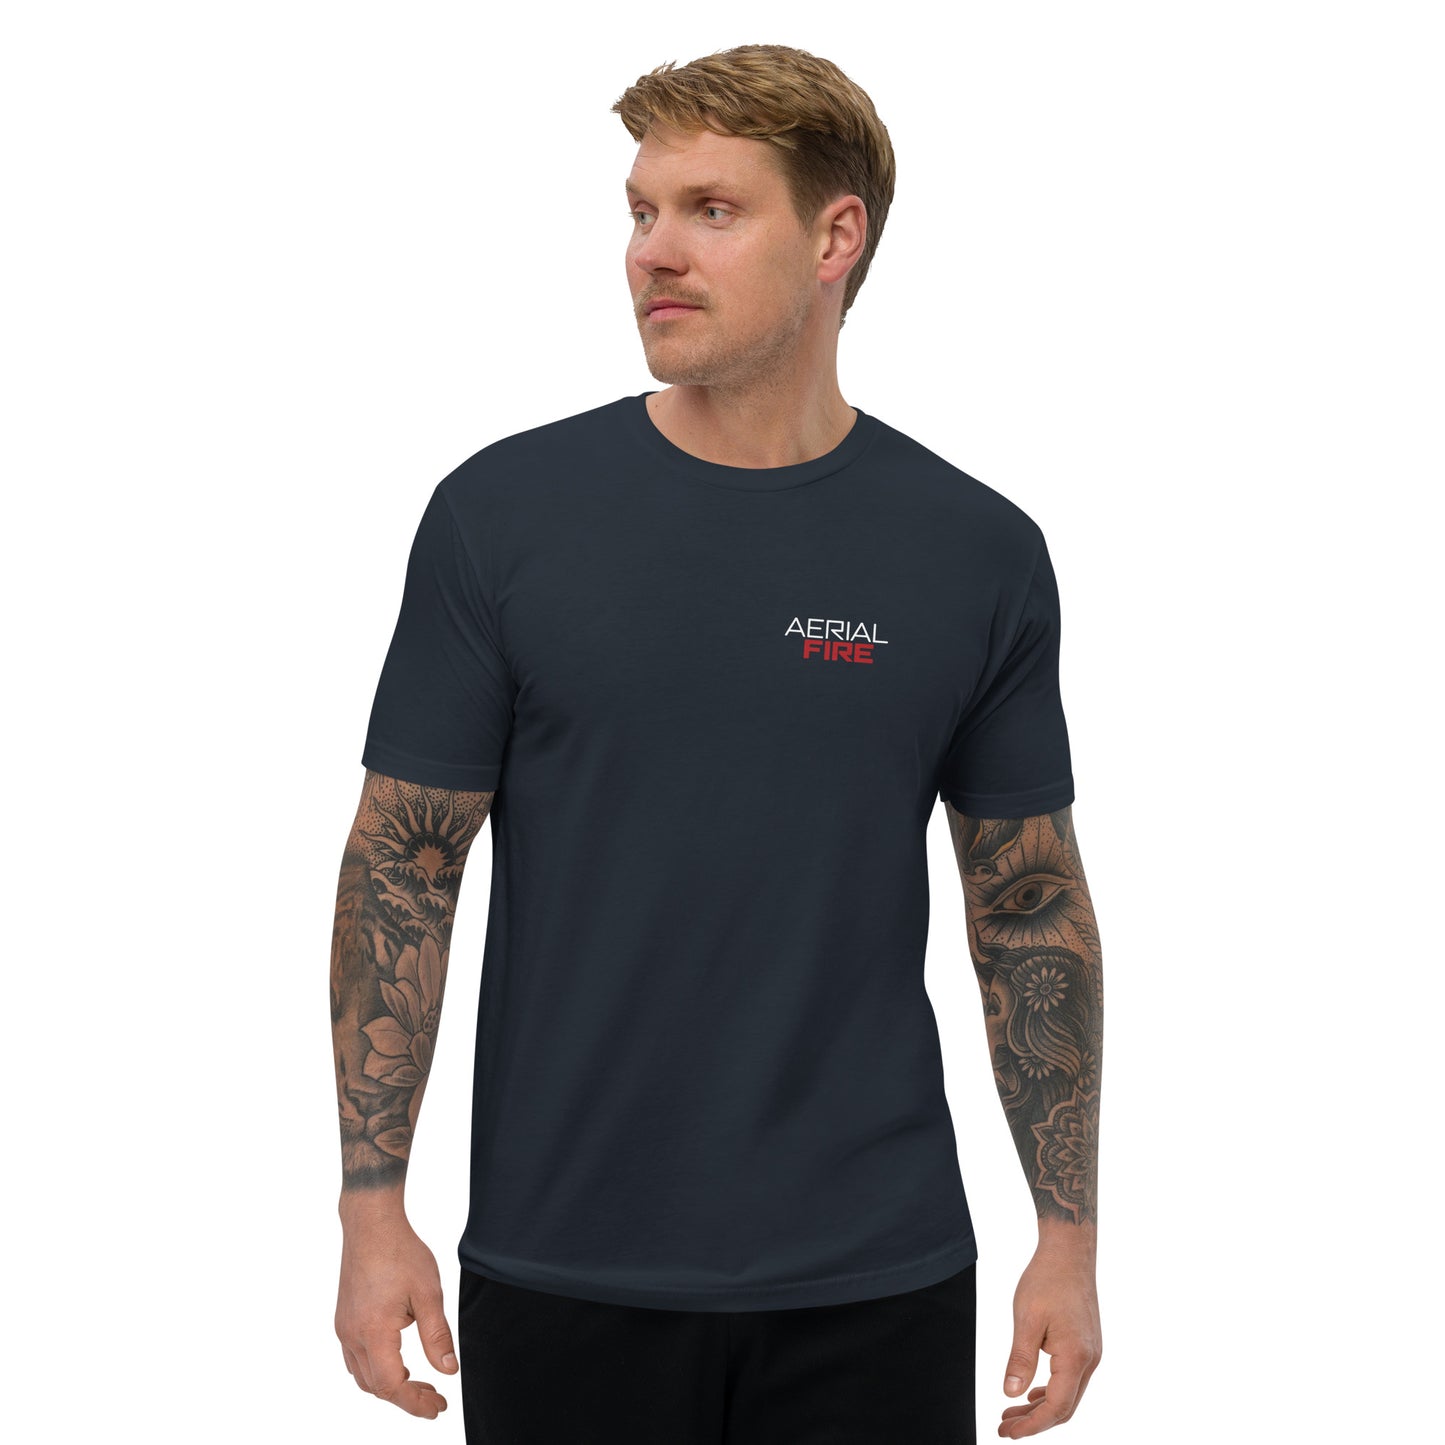 AerialFire 737 Fireliner T-shirt